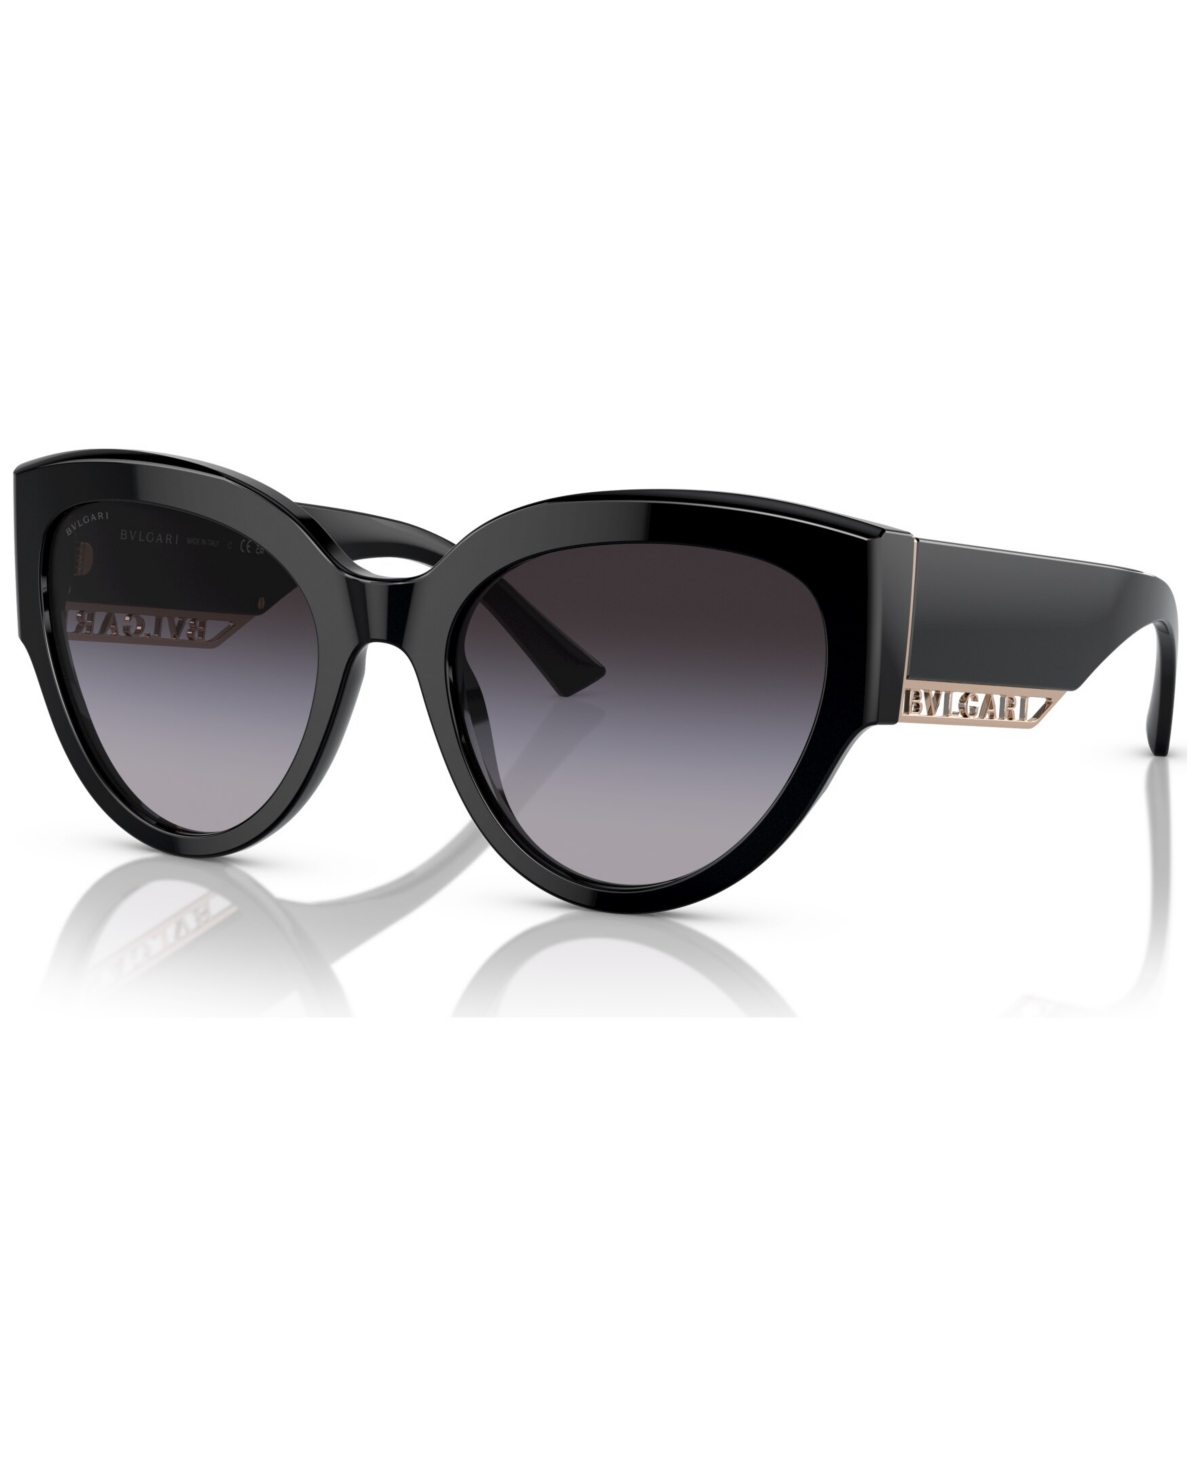 Bvlgari Women's Low Bridge Fit Sunglasses, Bv8258f In Black